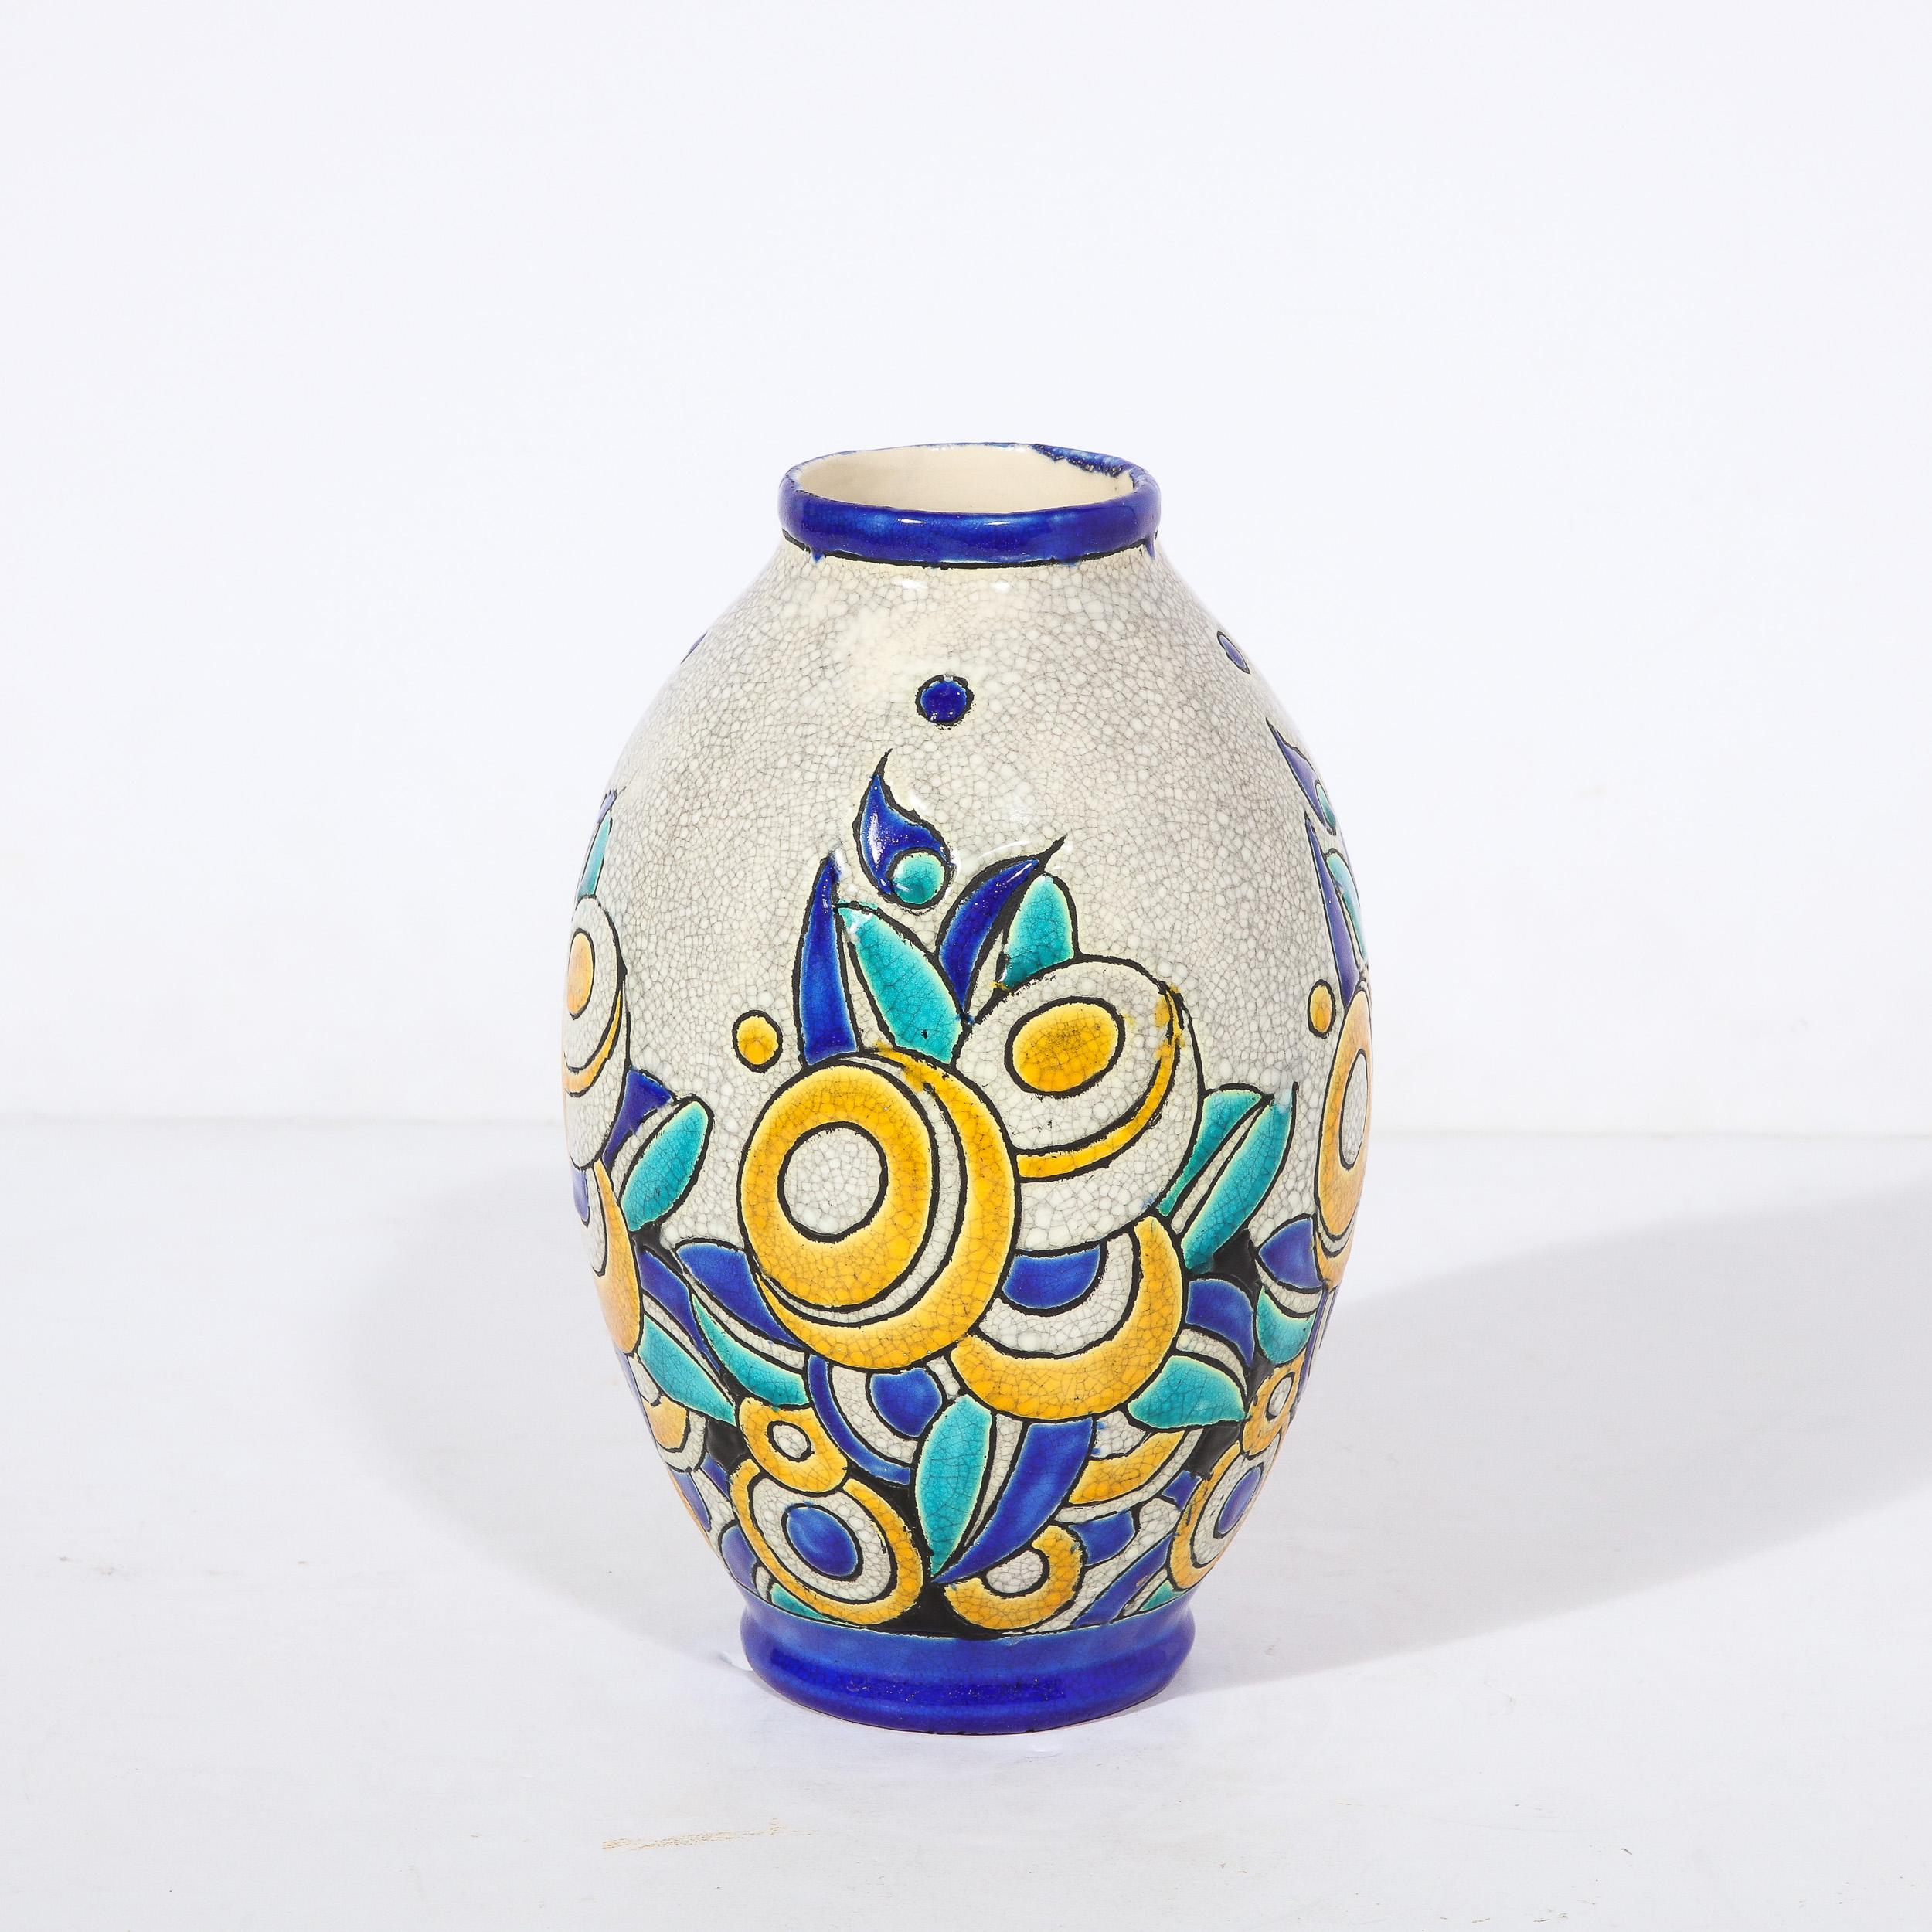 Ce superbe vase Art déco en céramique avec des fleurs cubiques en craquelure et des détails émaillés multicolores a été conçu par Charles Catteau pour Boch Frères Keramis, et provient de Belgique, vers 1930. Boch Frères Keramis a été fondée en 1841